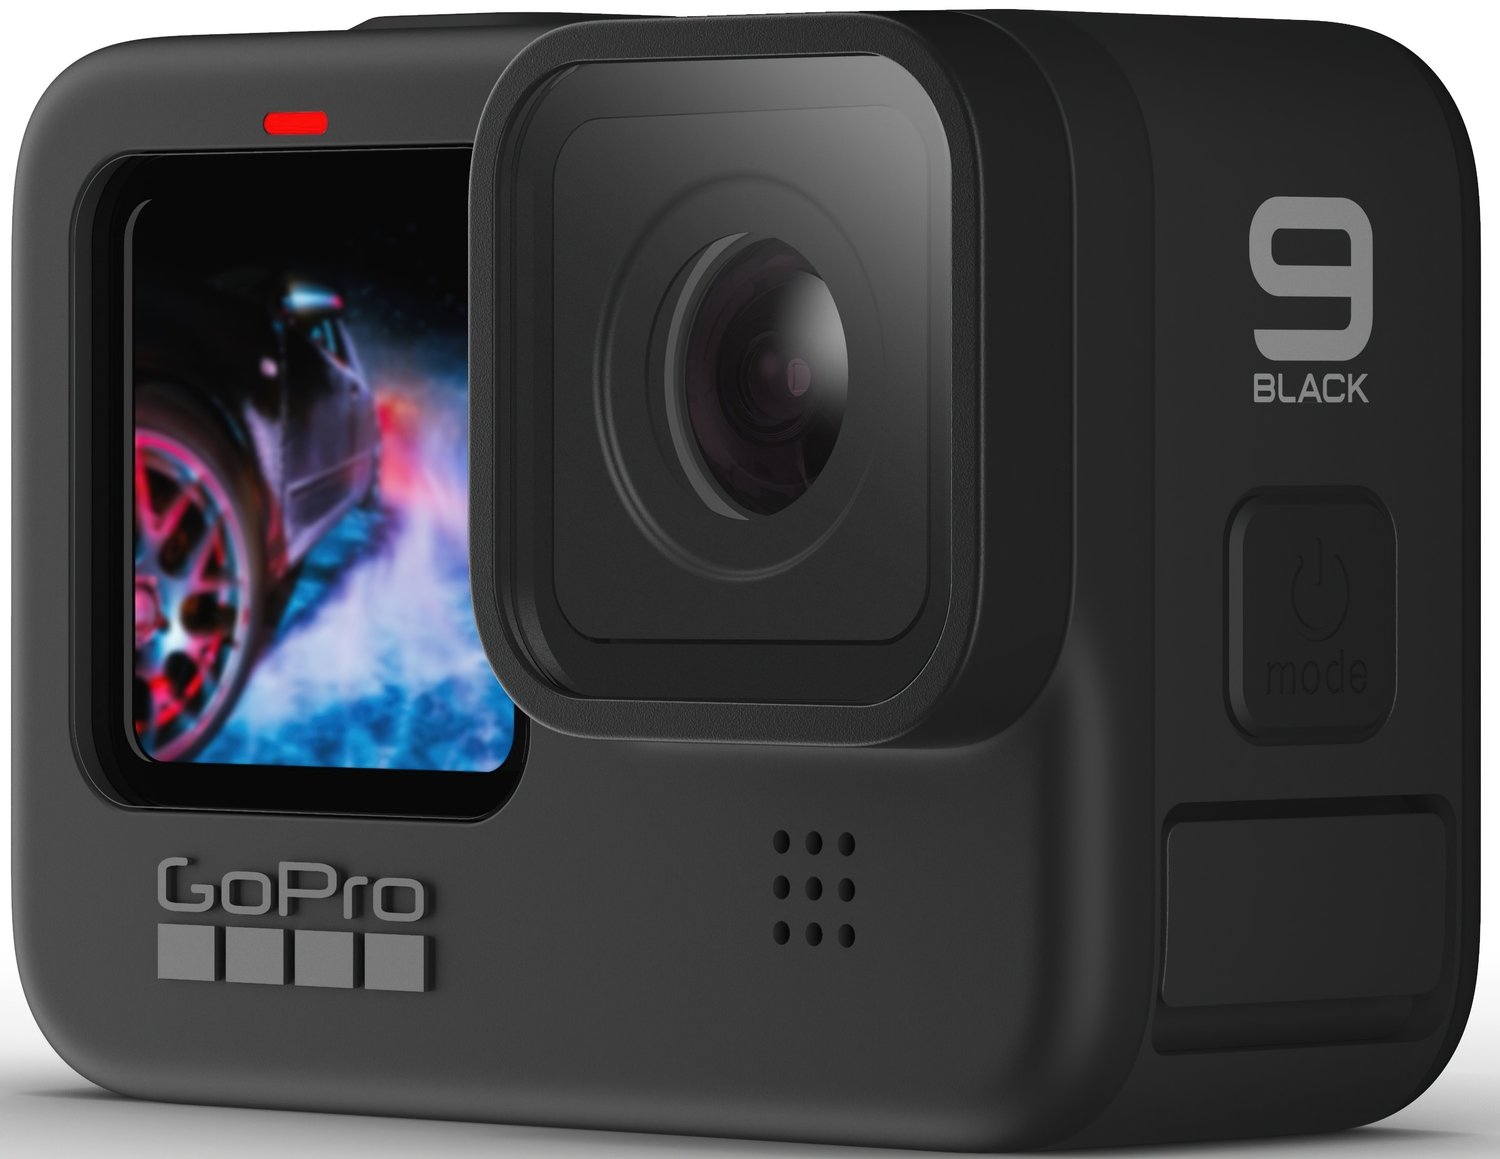 Екшн-камера GoPro HERO9 Black (CHDHX-901-RW) - зображення 2